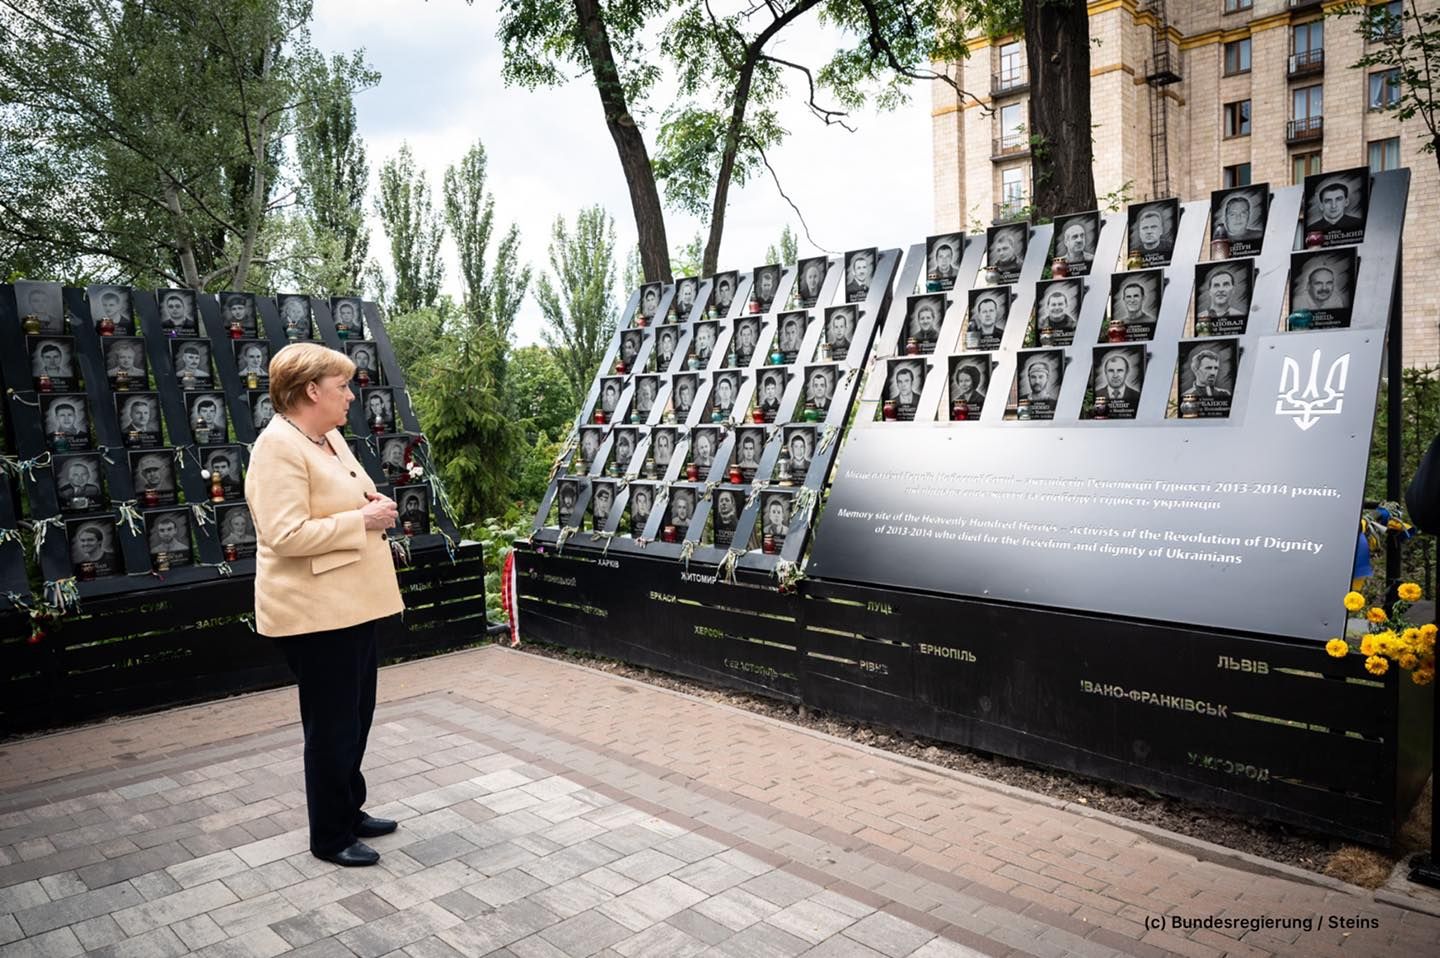 Меркель у Києві вшанувала жертв Другої світової та Небесну Сотню - Україна новини - 24 Канал